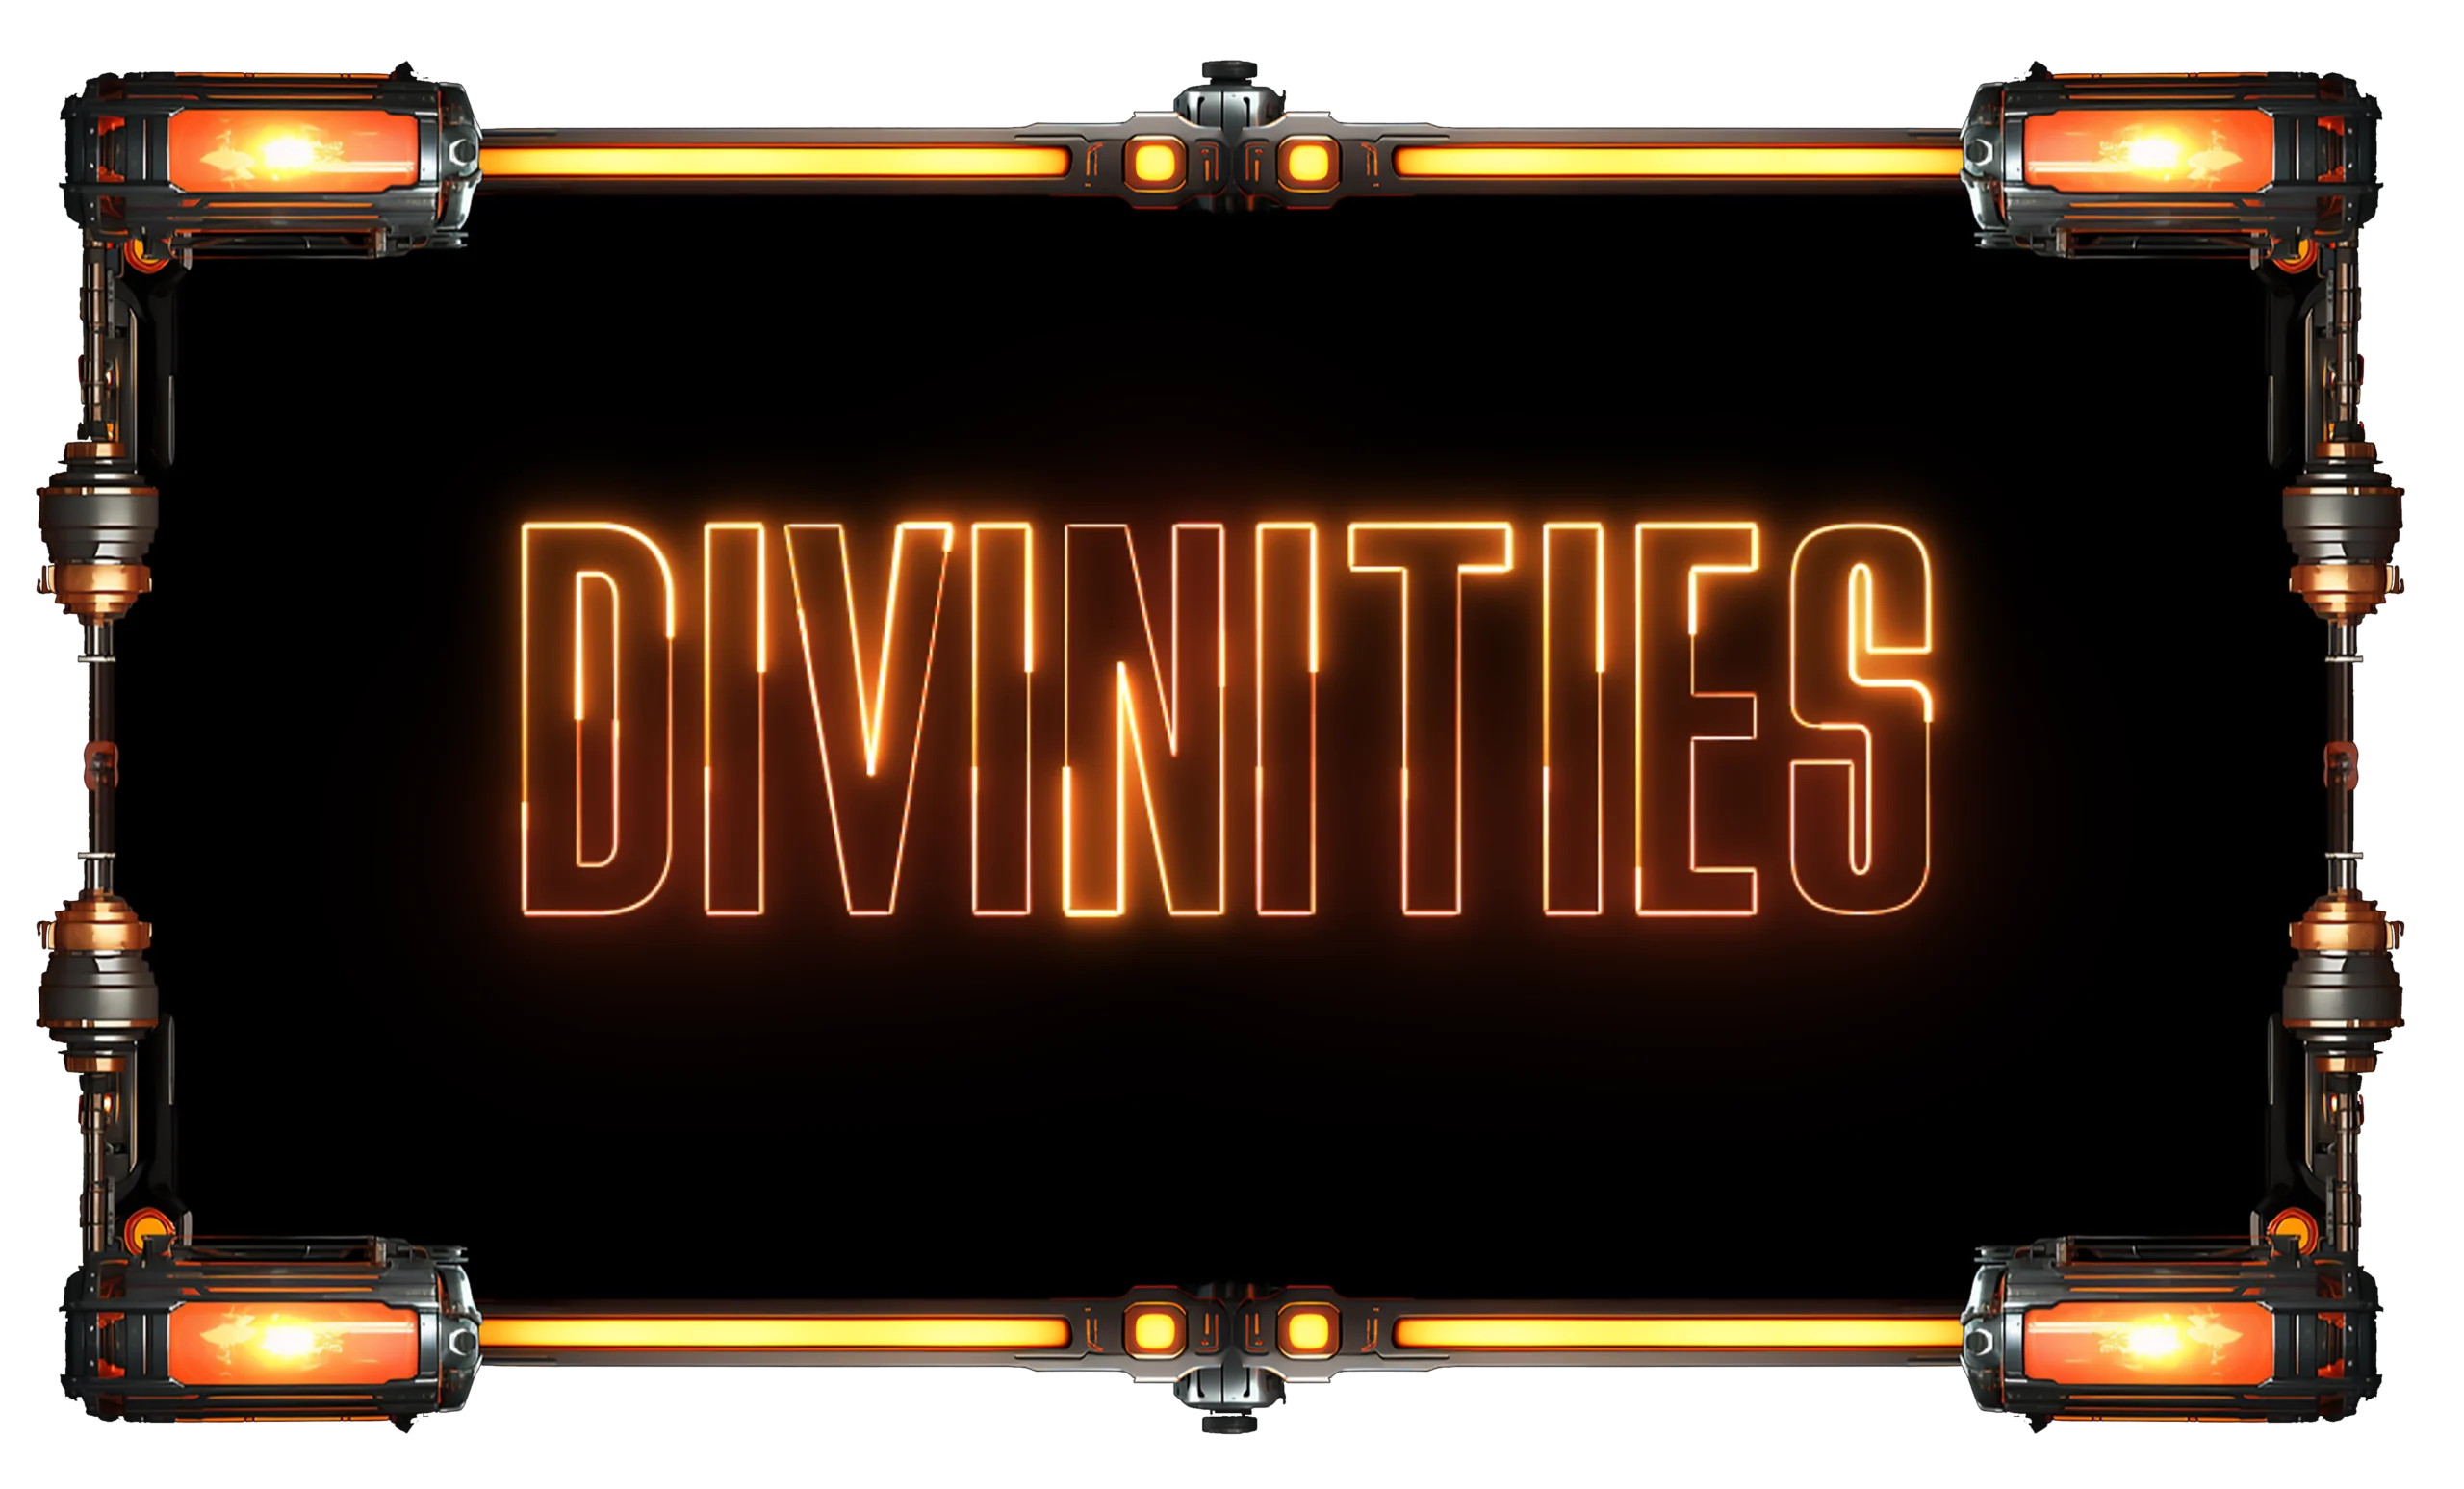 Divinities